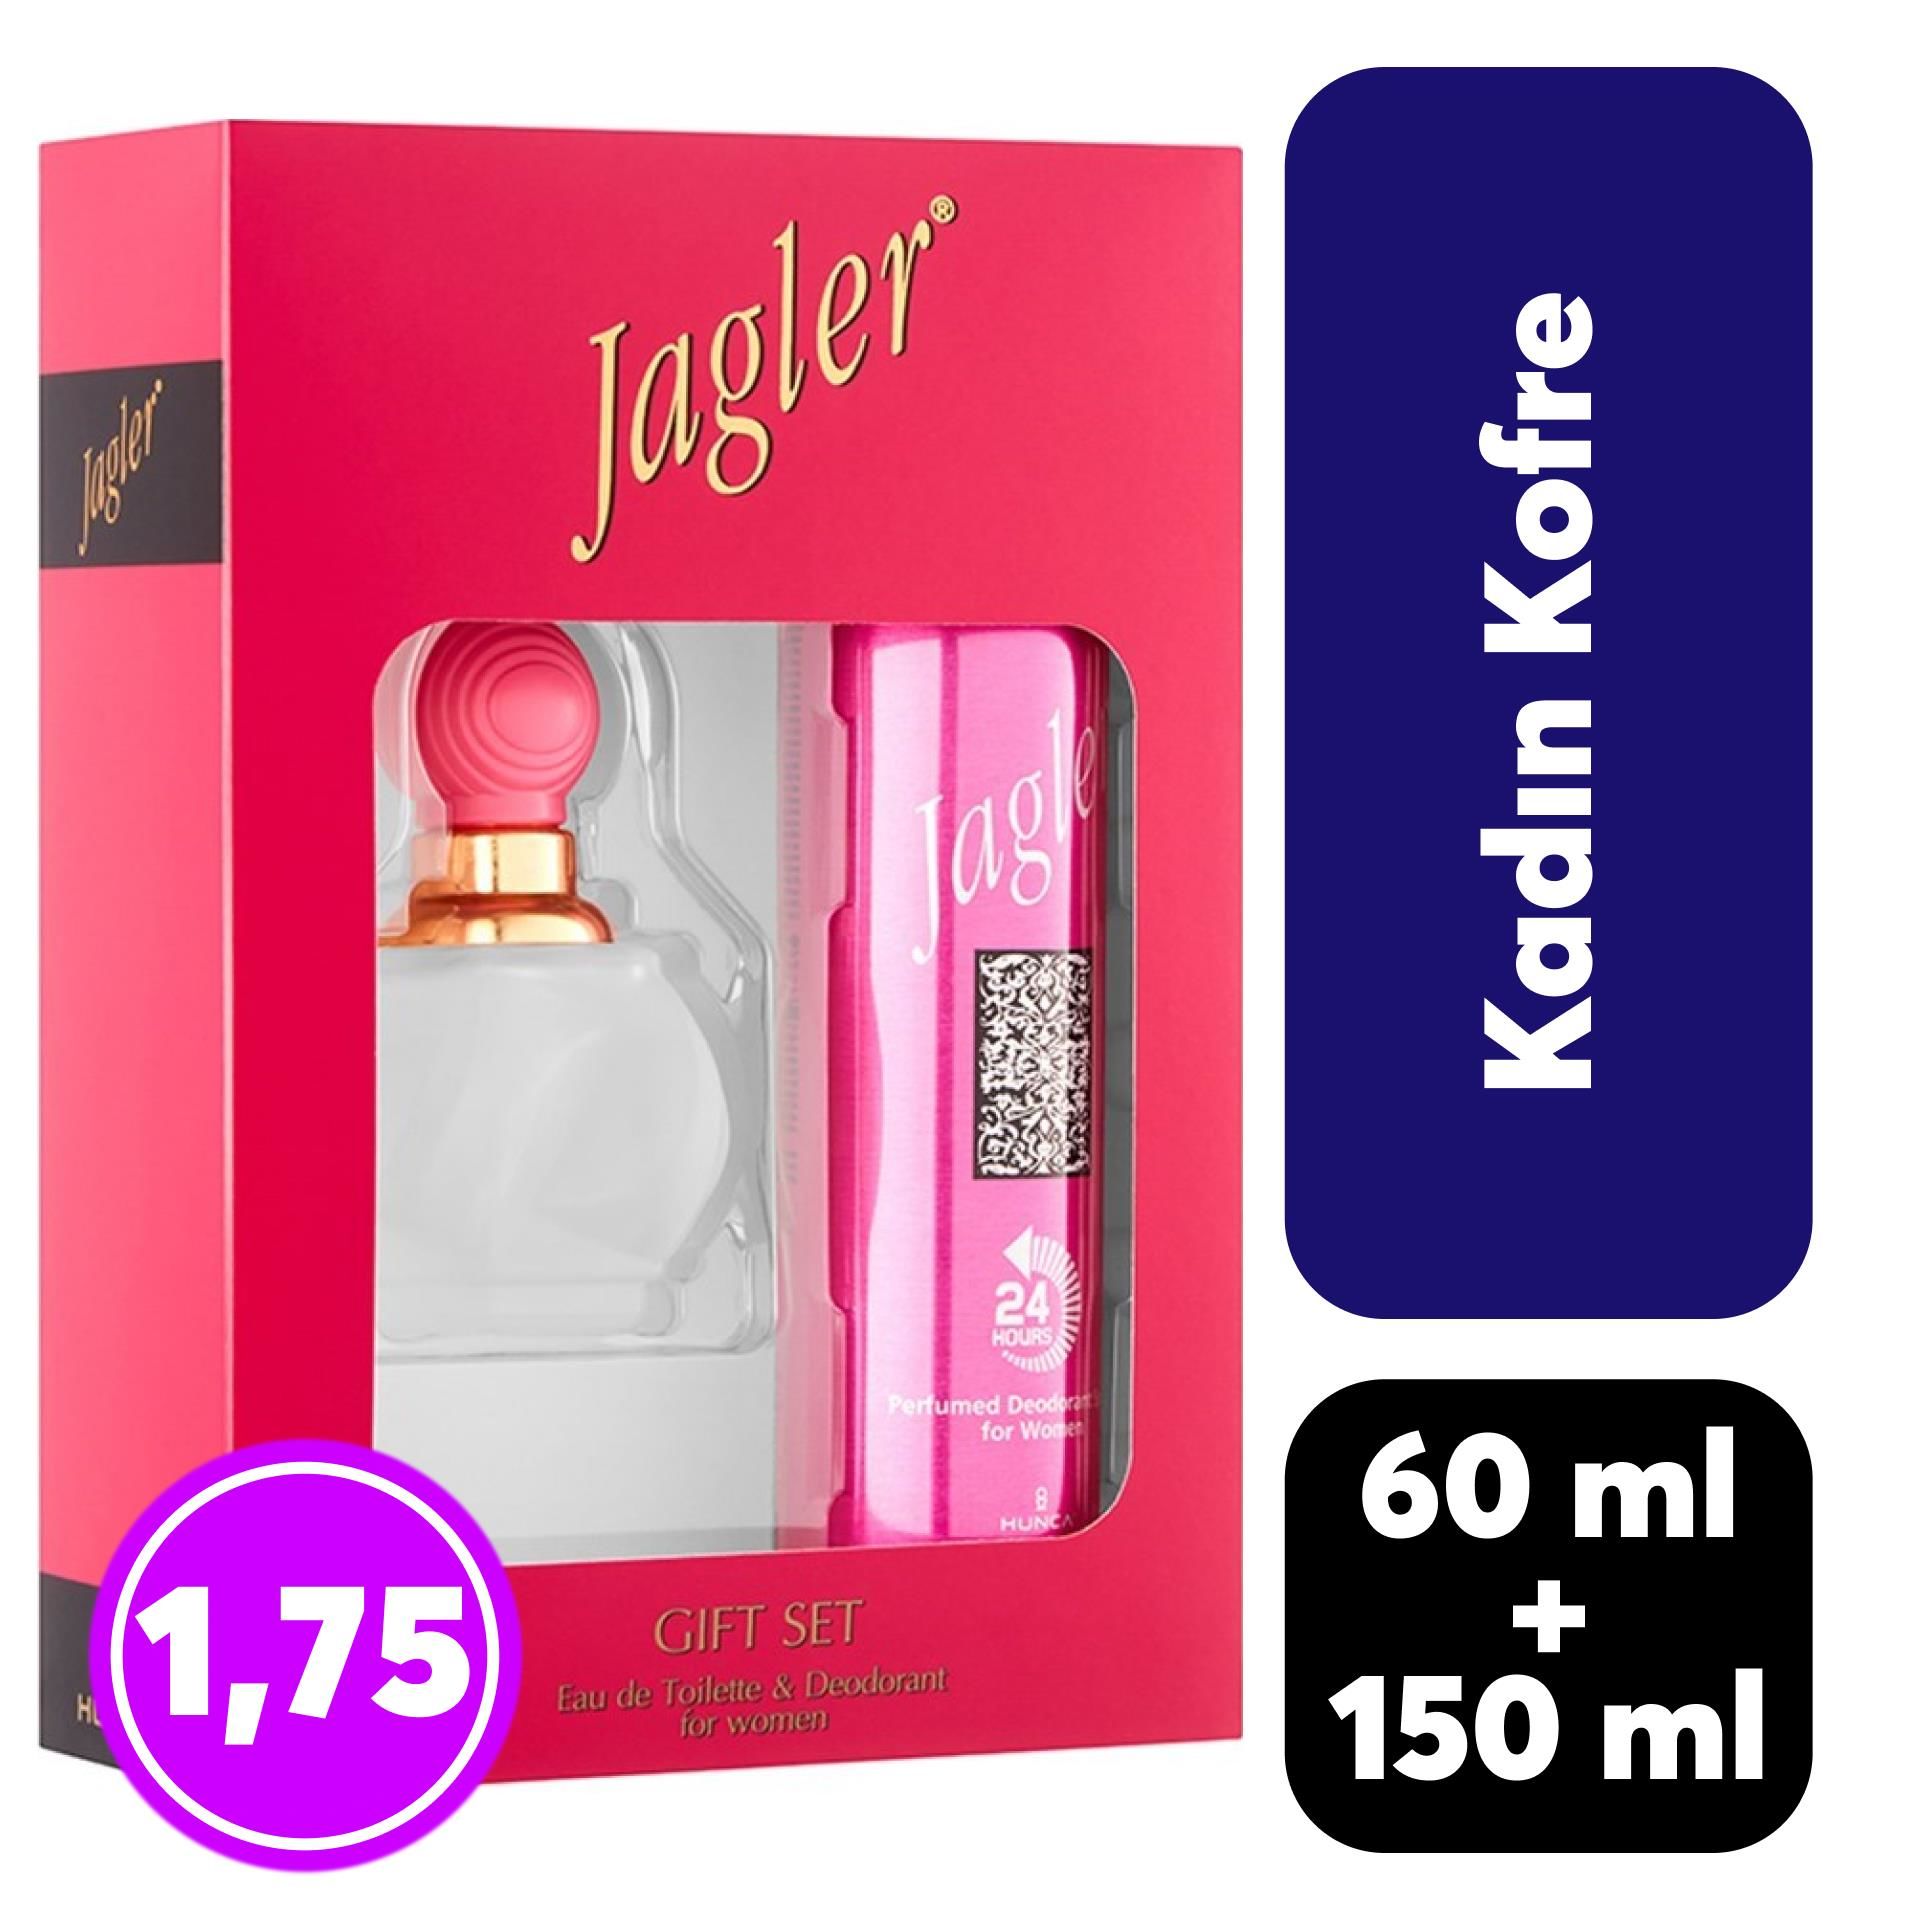 Kofre Jagler Kadın Parfüm 60 ml + Deodorant 150 ml